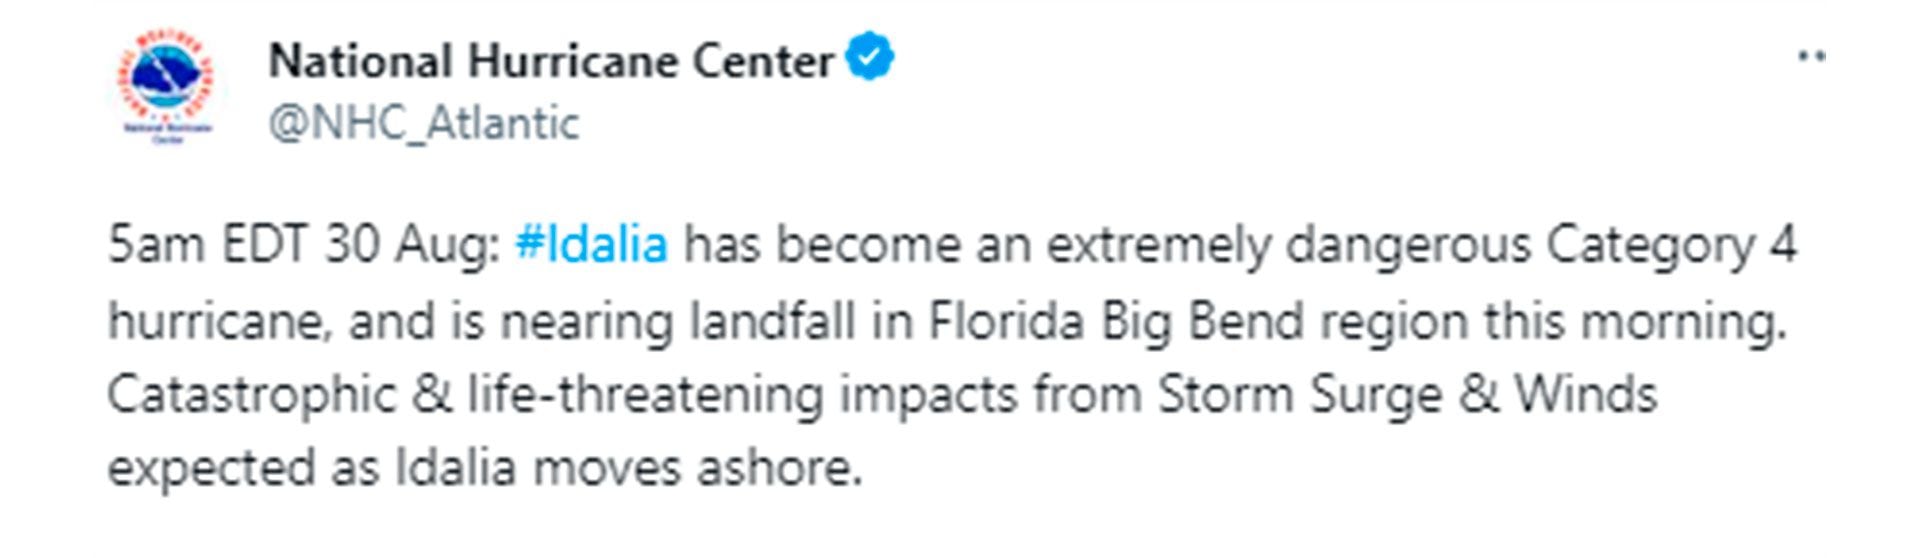 “Idalia se ha convertido en un huracán de categoría 4 extremadamente peligroso, y está cerca de tocar tierra en la región de Florida Big Bend esta mañana. Impactos catastróficos y potencialmente mortales de la marejada ciclónica y los vientos esperados como Idalia se mueve en tierra” @NHC_Atlantic